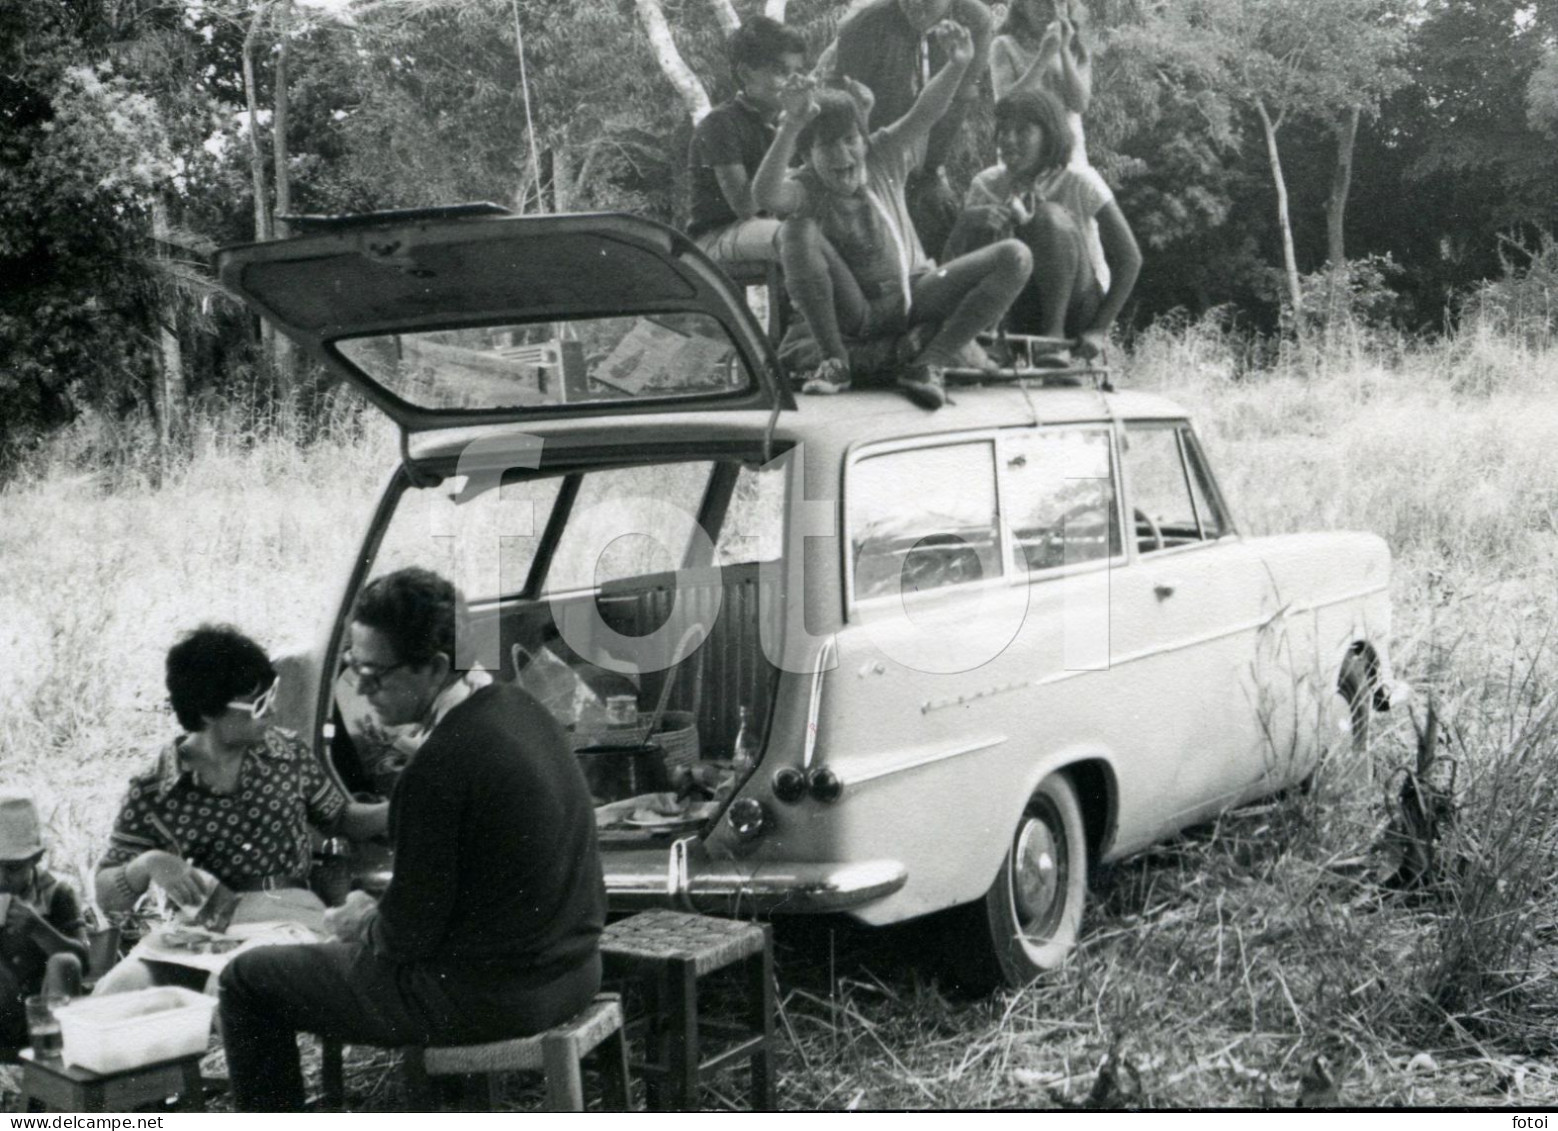 60s ORIGINAL AMATEUR PHOTO FOTO P2 OPEL REKORD CARAVAN OLDTIMER PICNIC MOZAMBIQUE MOÇAMBIQUE AFRICA  AFRIQUE AT112 - Auto's